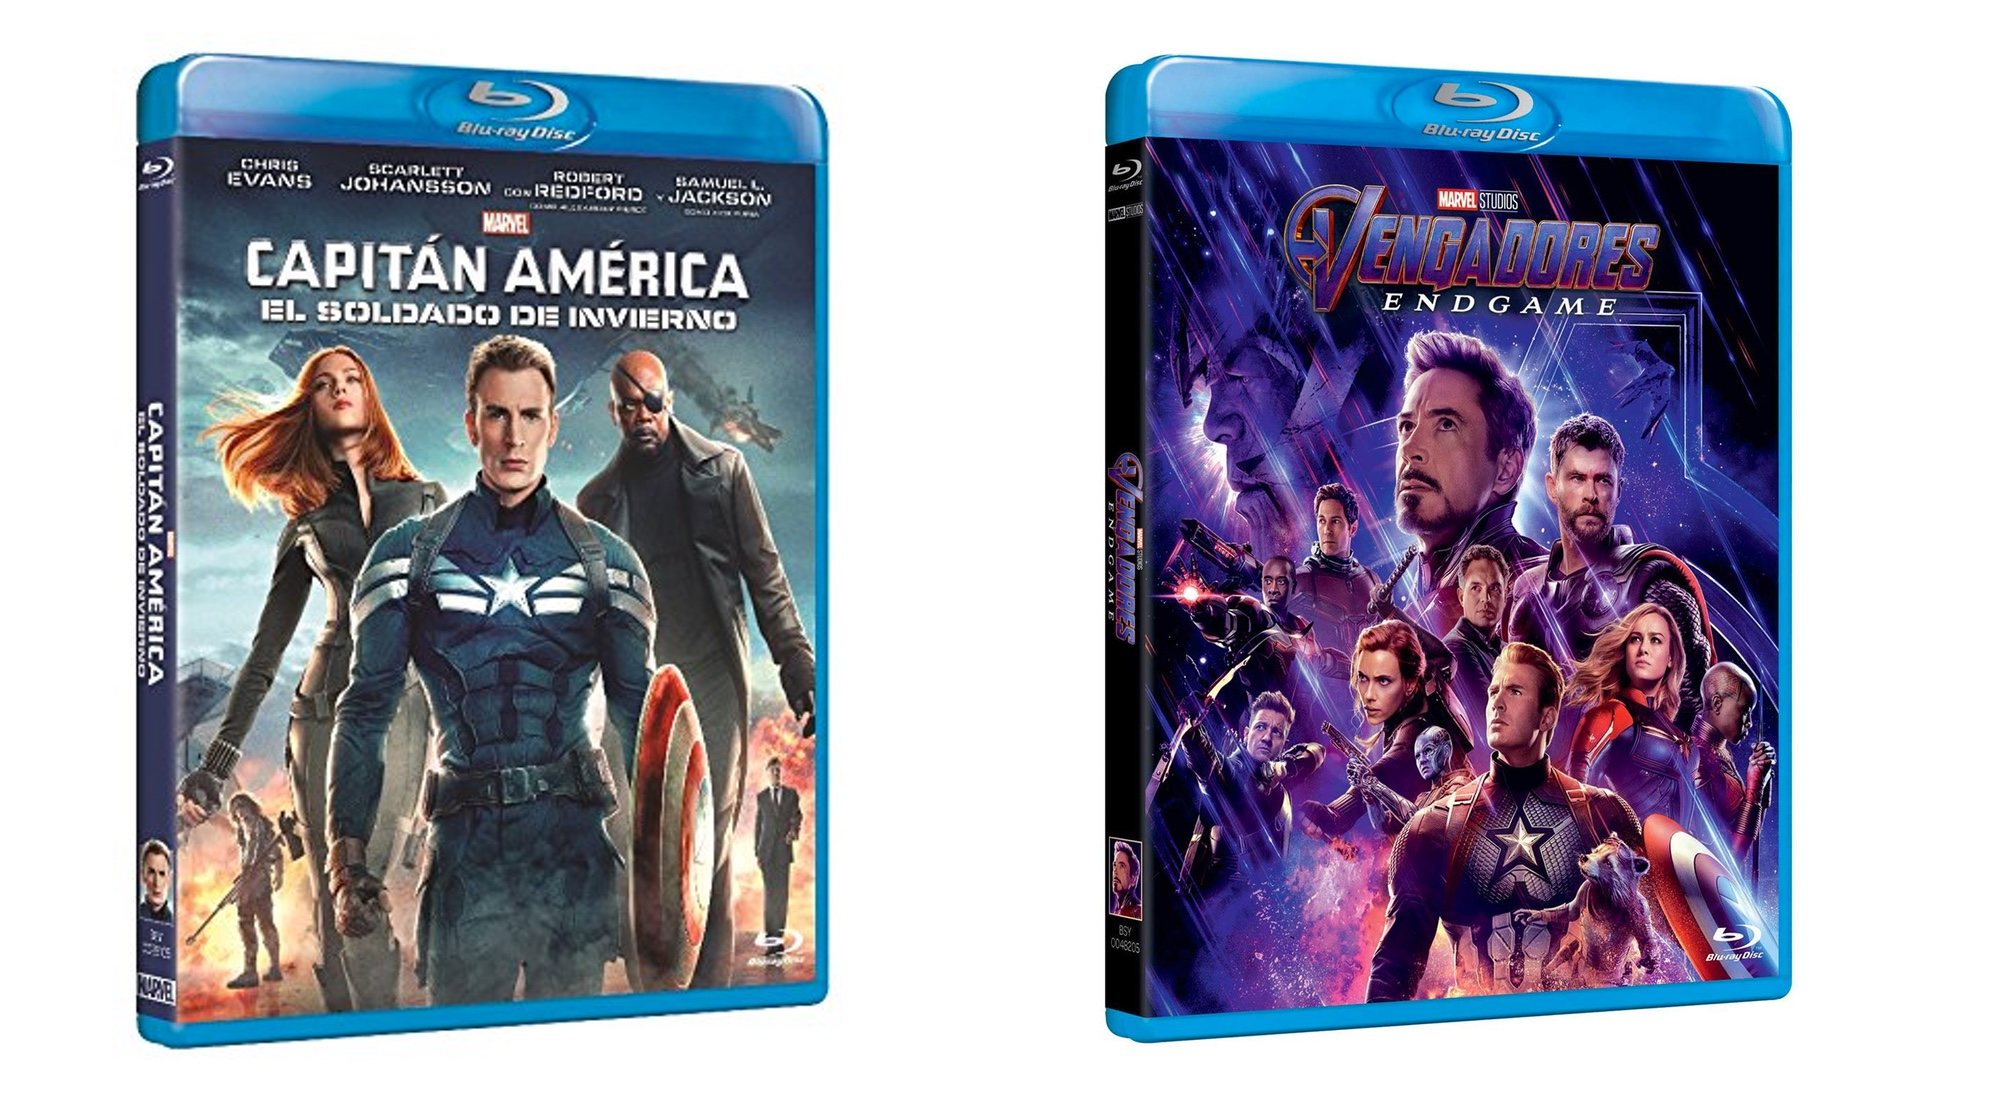 "Capitán América: El soldado de invierno" y "Vengadores: Endgame"